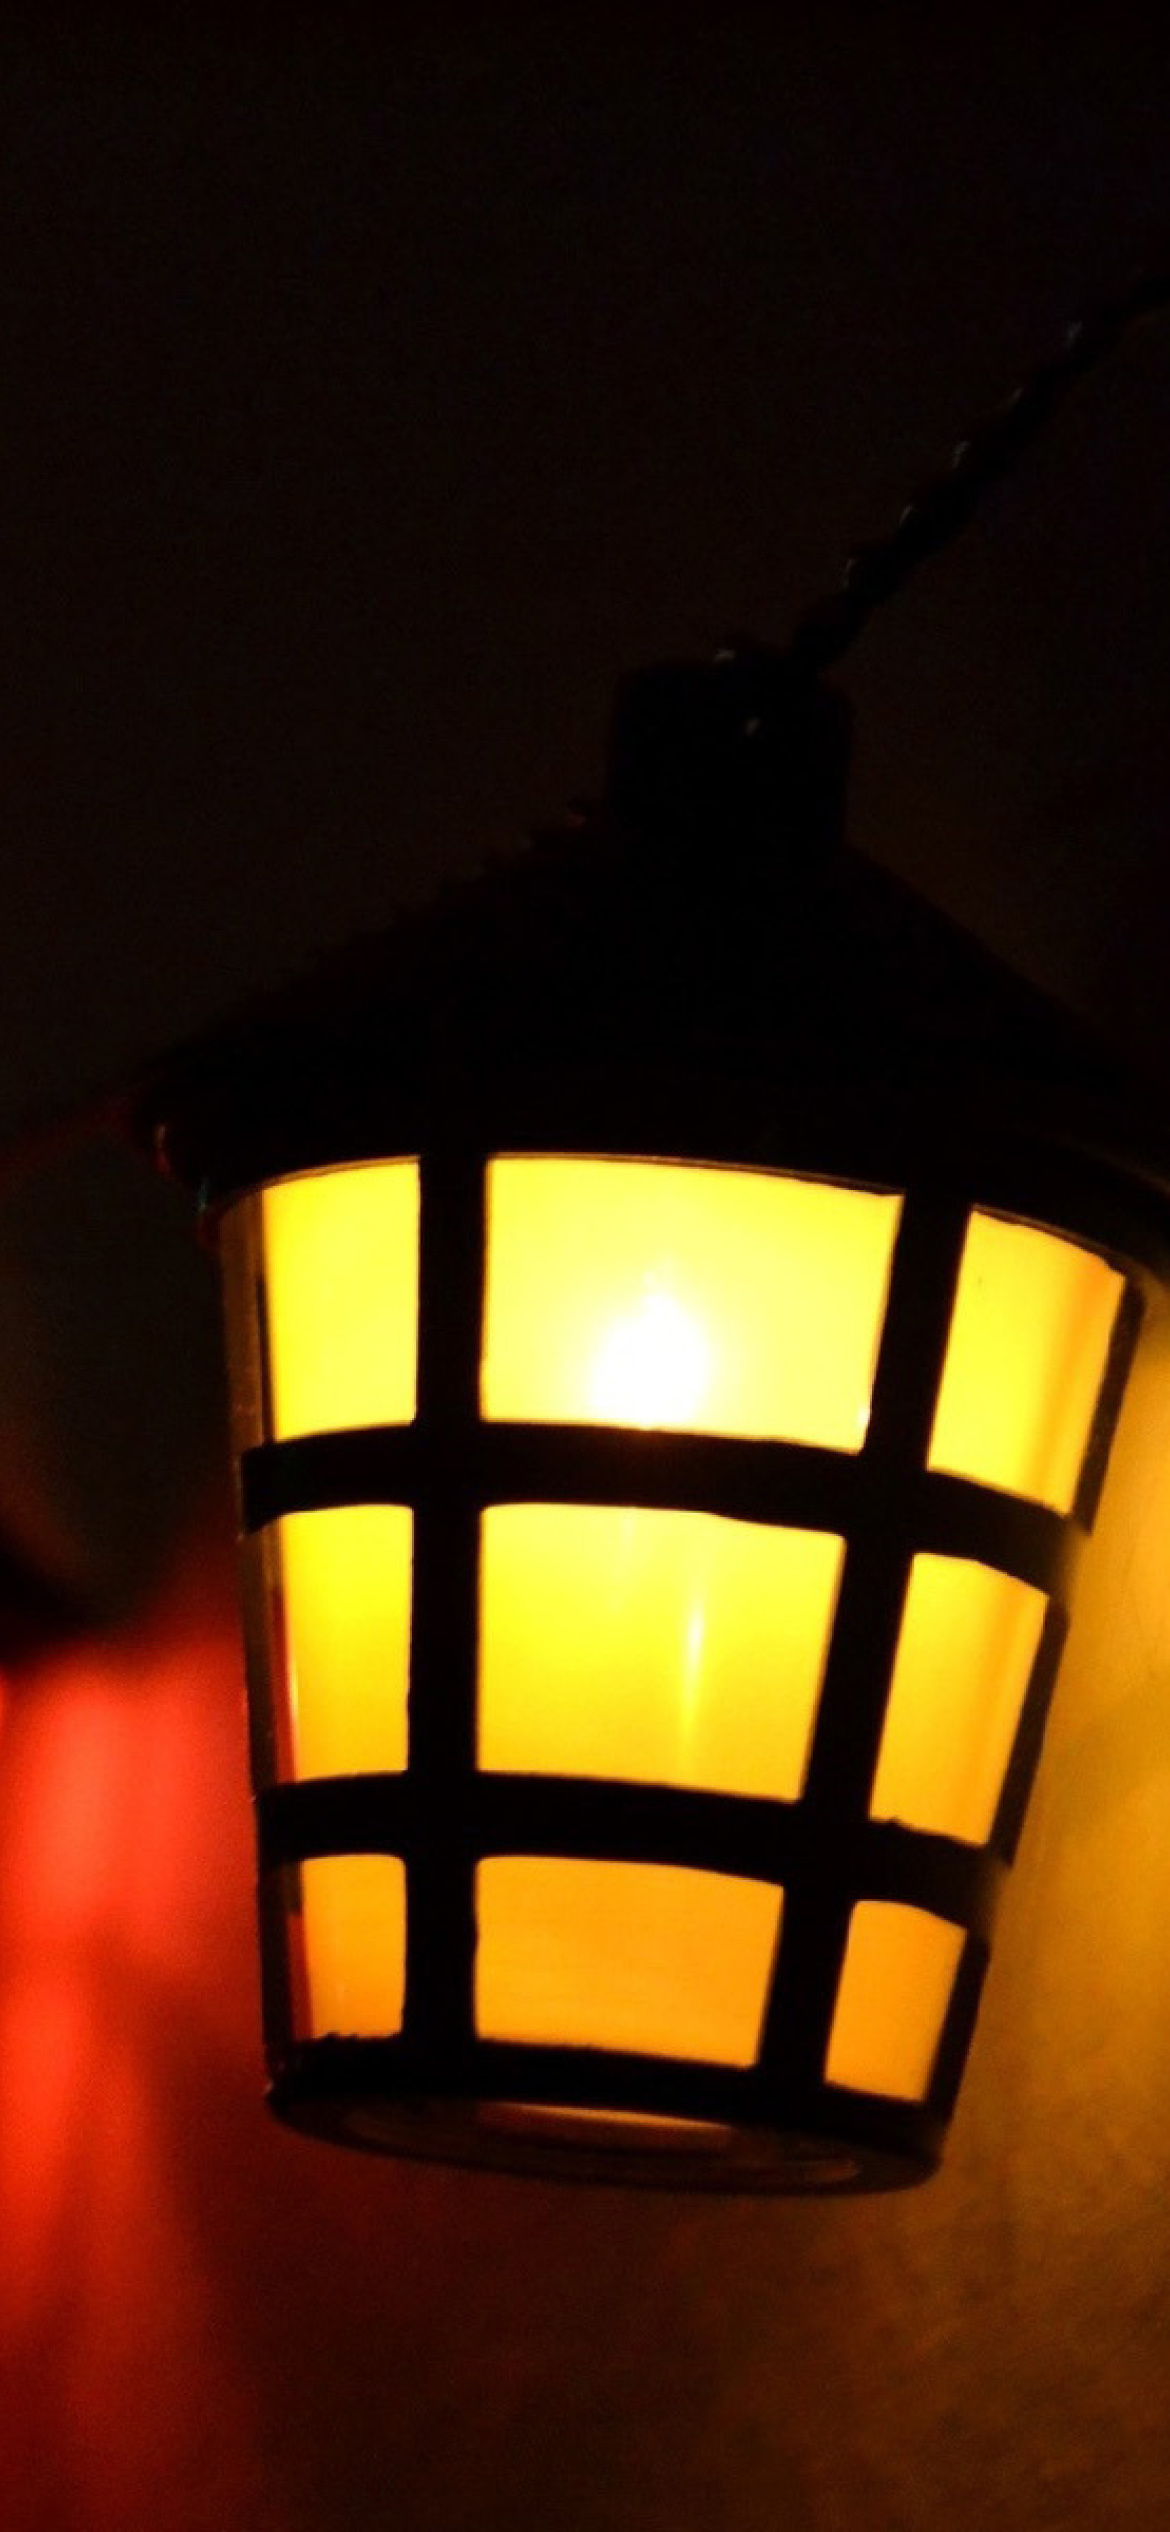 Обои Lamps Lights 1170x2532